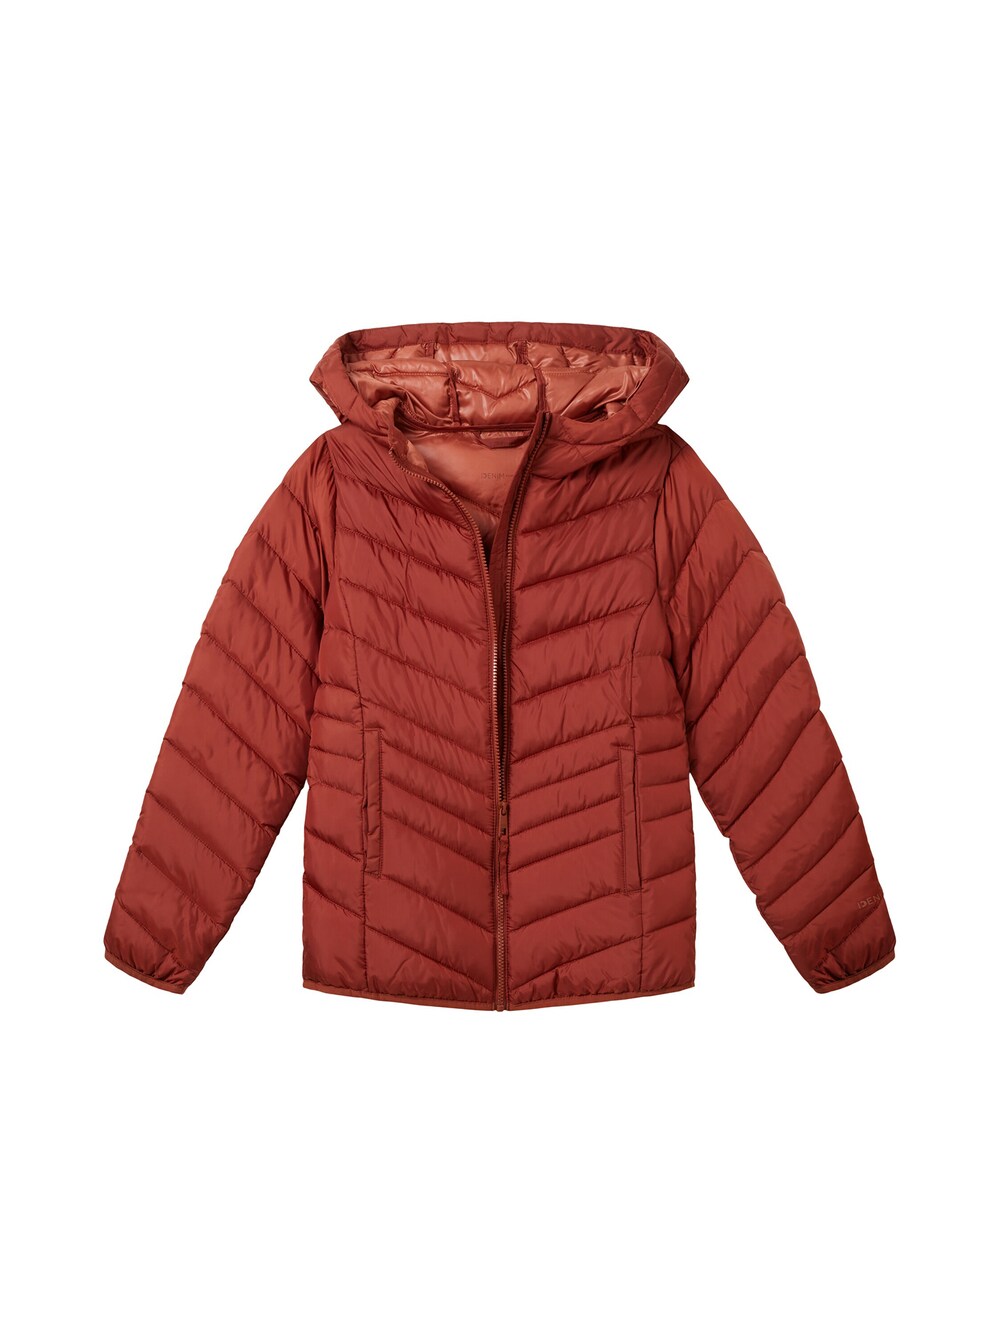 Межсезонная куртка Tom Tailor, ржаво-красный межсезонная куртка tom tailor ржаво красный